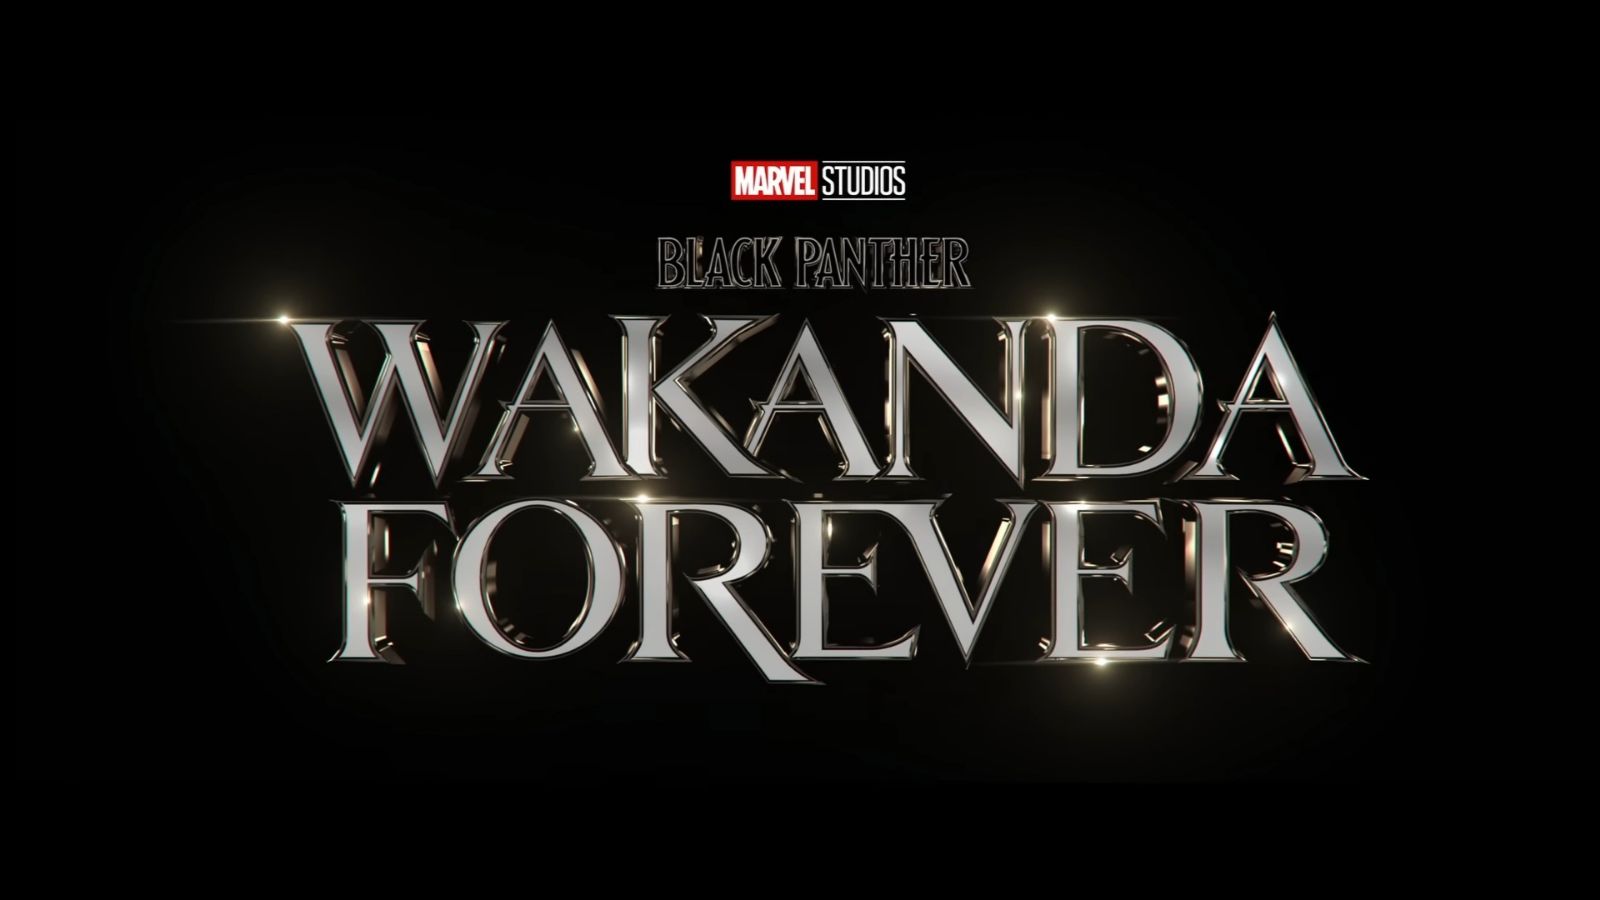 Wakanda forever torrent download killer bean pc game download